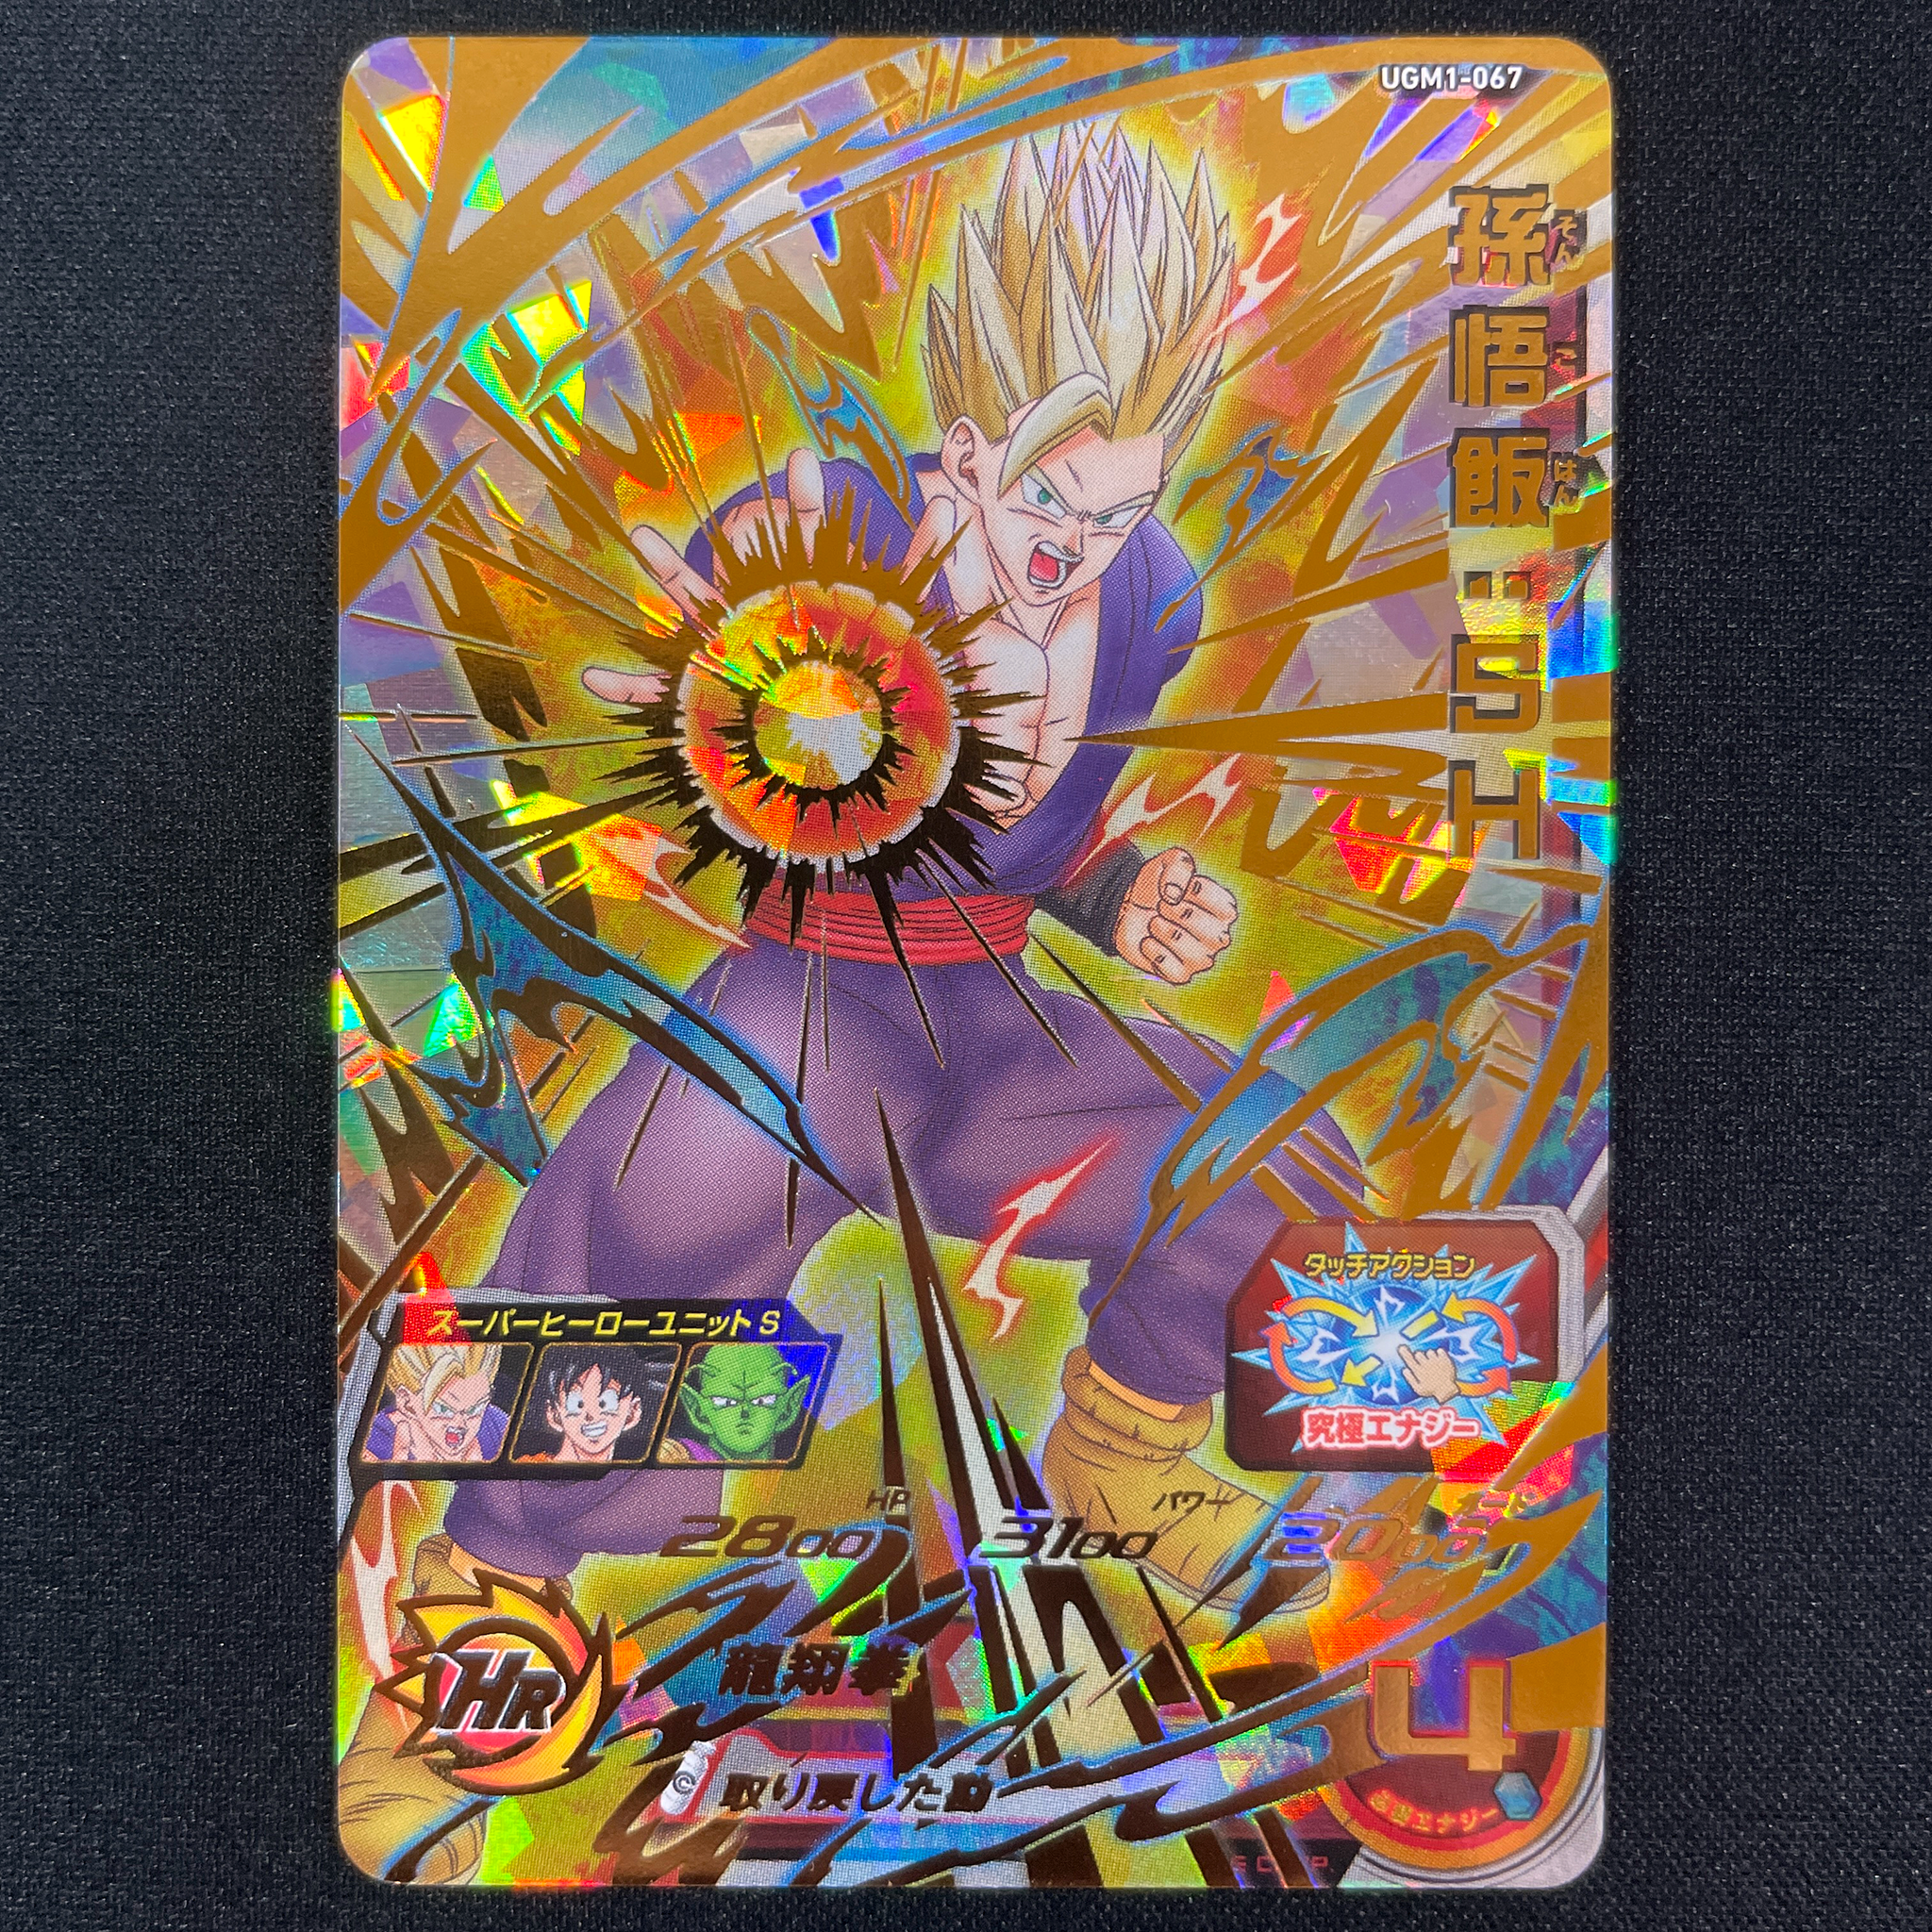 SUPER DRAGON BALL HEROES UGM1-067 Ultimate Rare card  Son Gohan : SH